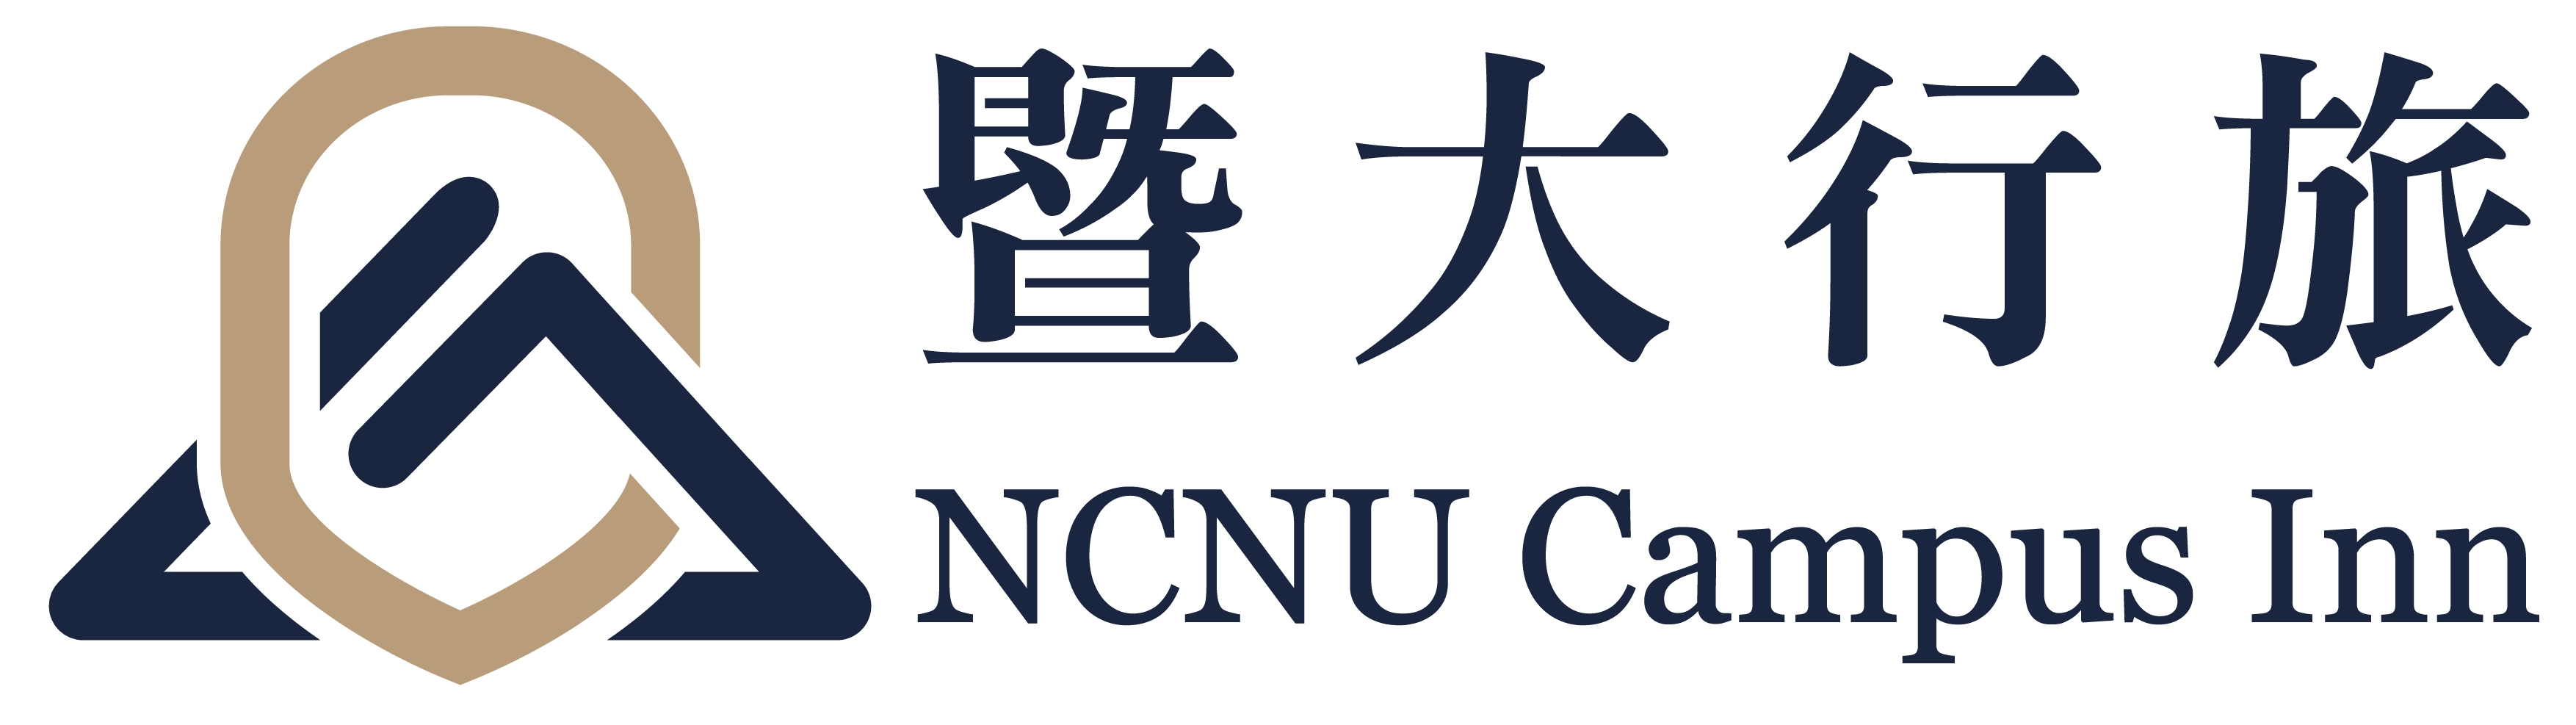 NCNU Campus Inn 暨大行旅/原點管理顧問有限公司42761240/原點管理顧問有限公司暨大分公司91052110/ORIGIN Management Consulting Co., Ltd.